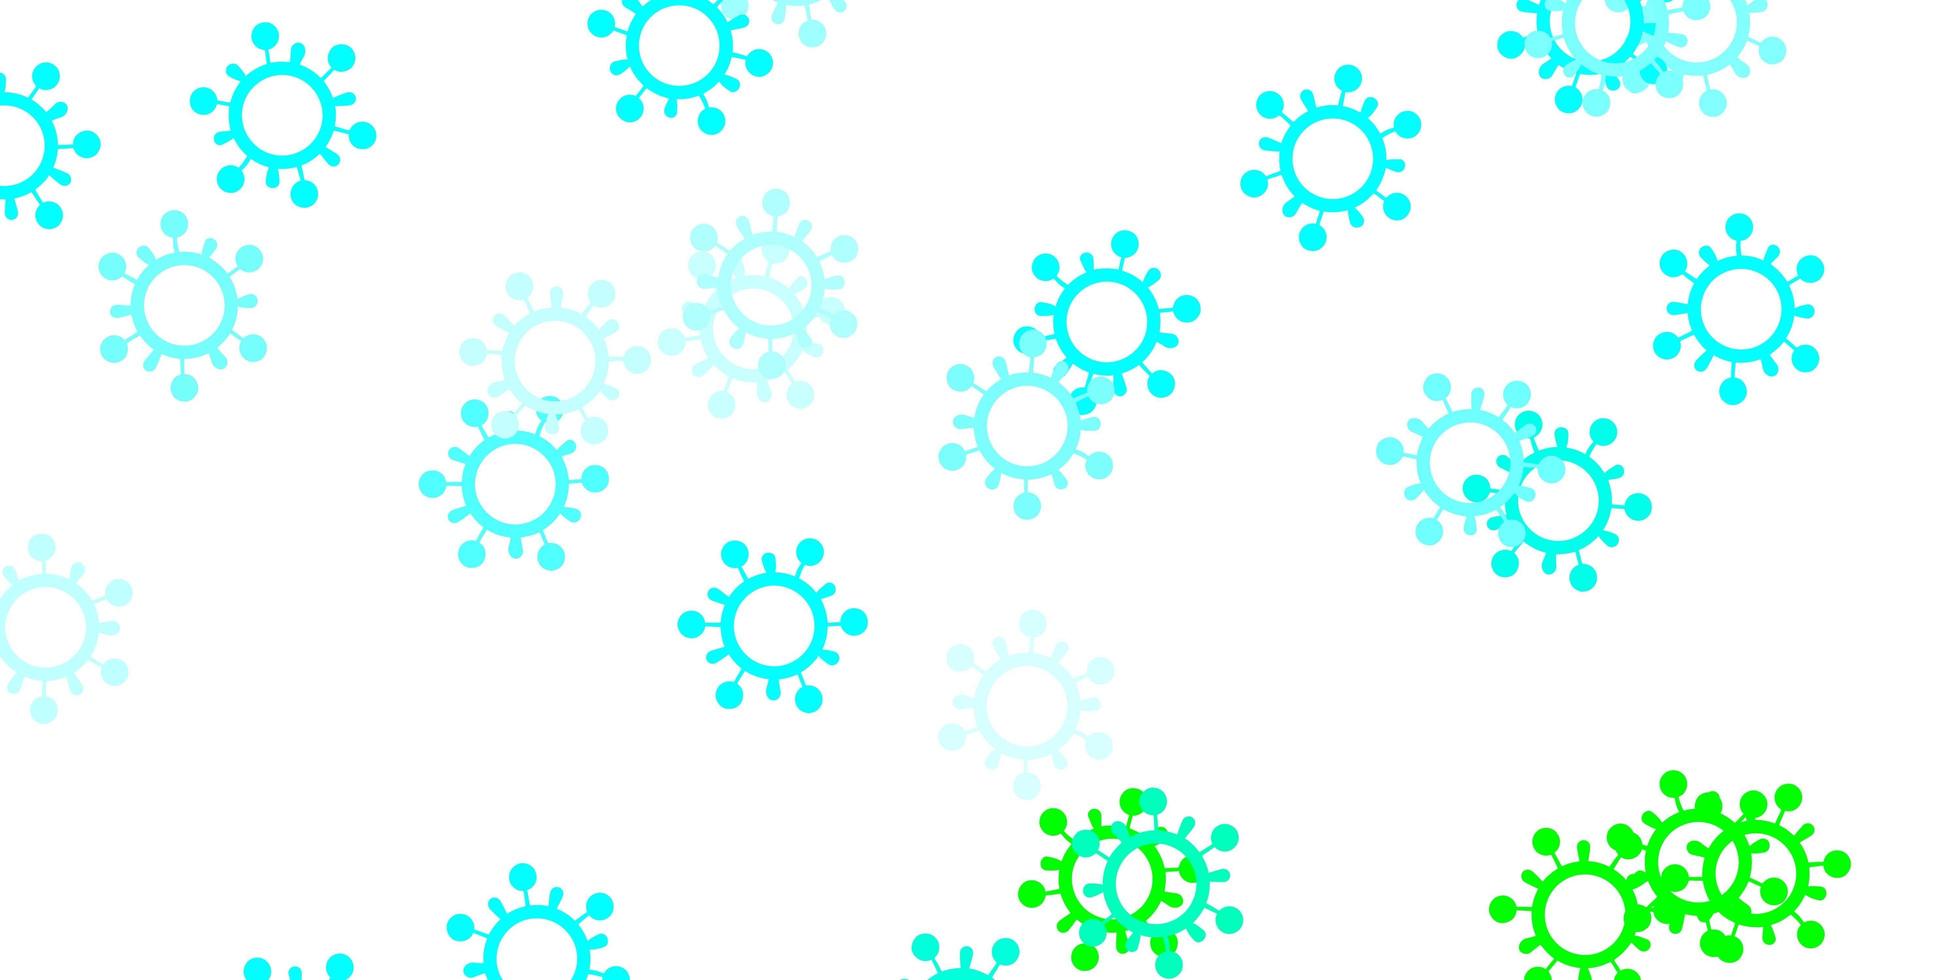 padrão de vetor azul, verde claro com elementos de coronavírus